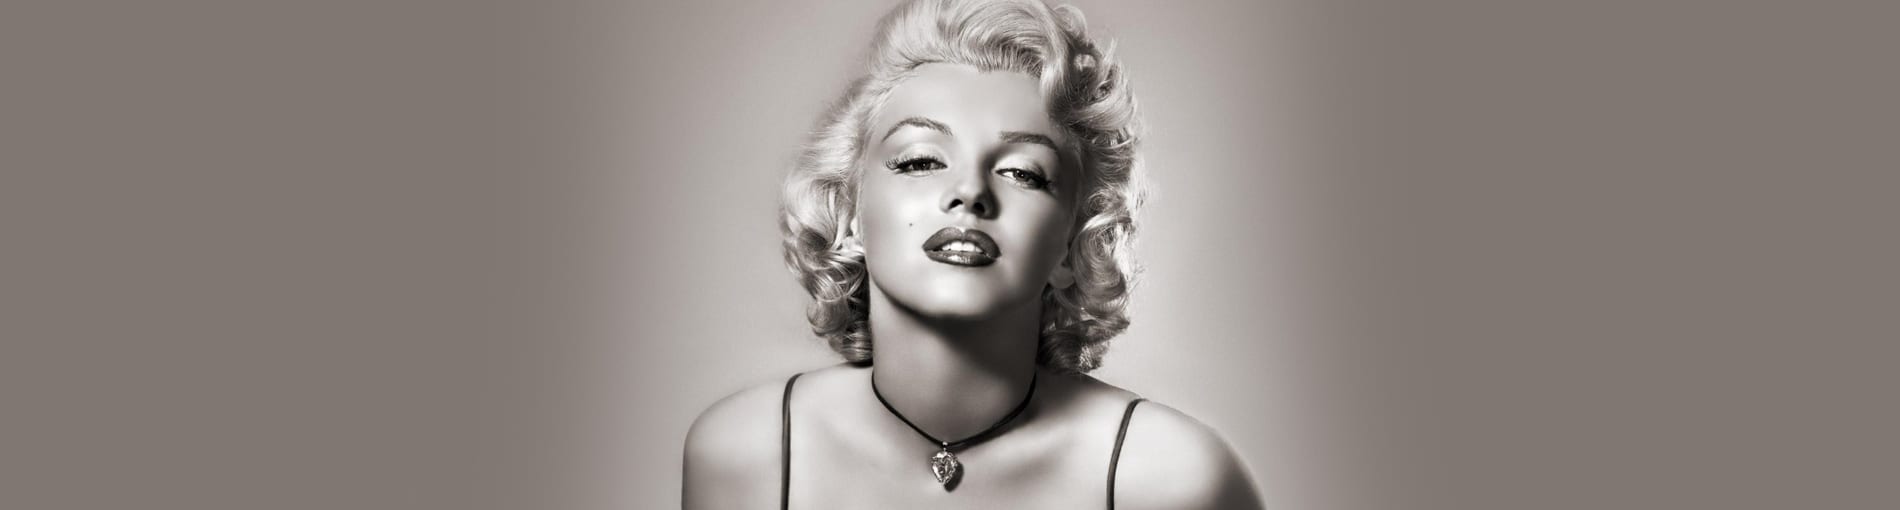 ¿Quién es Marilyn Monroe? Te contamos 7 curiosidades que no sabes sobre ella.